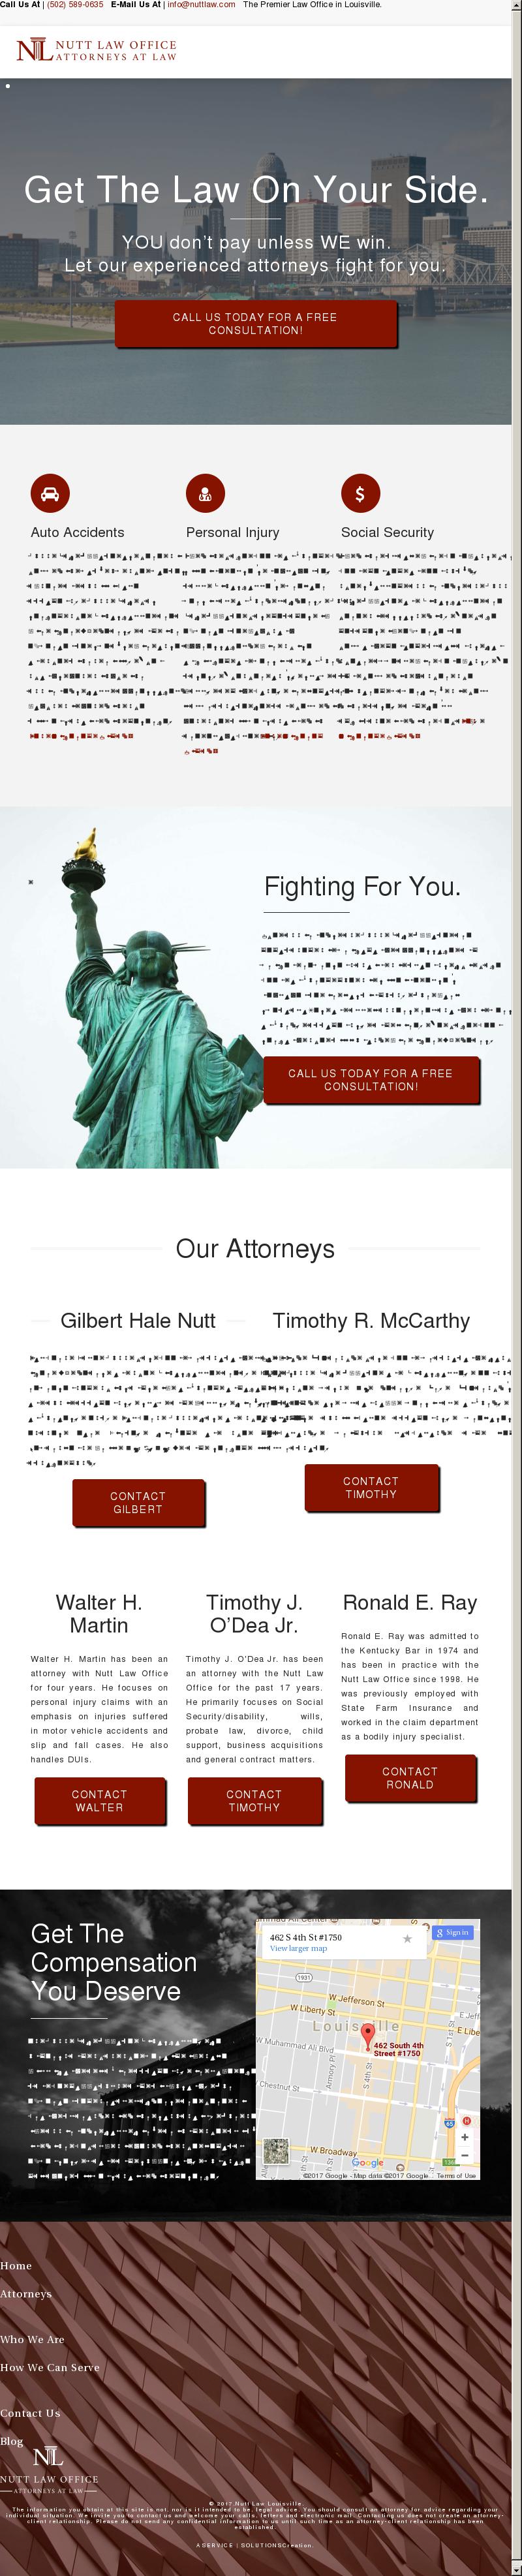 Nutt Law Office - Louisville KY Lawyers